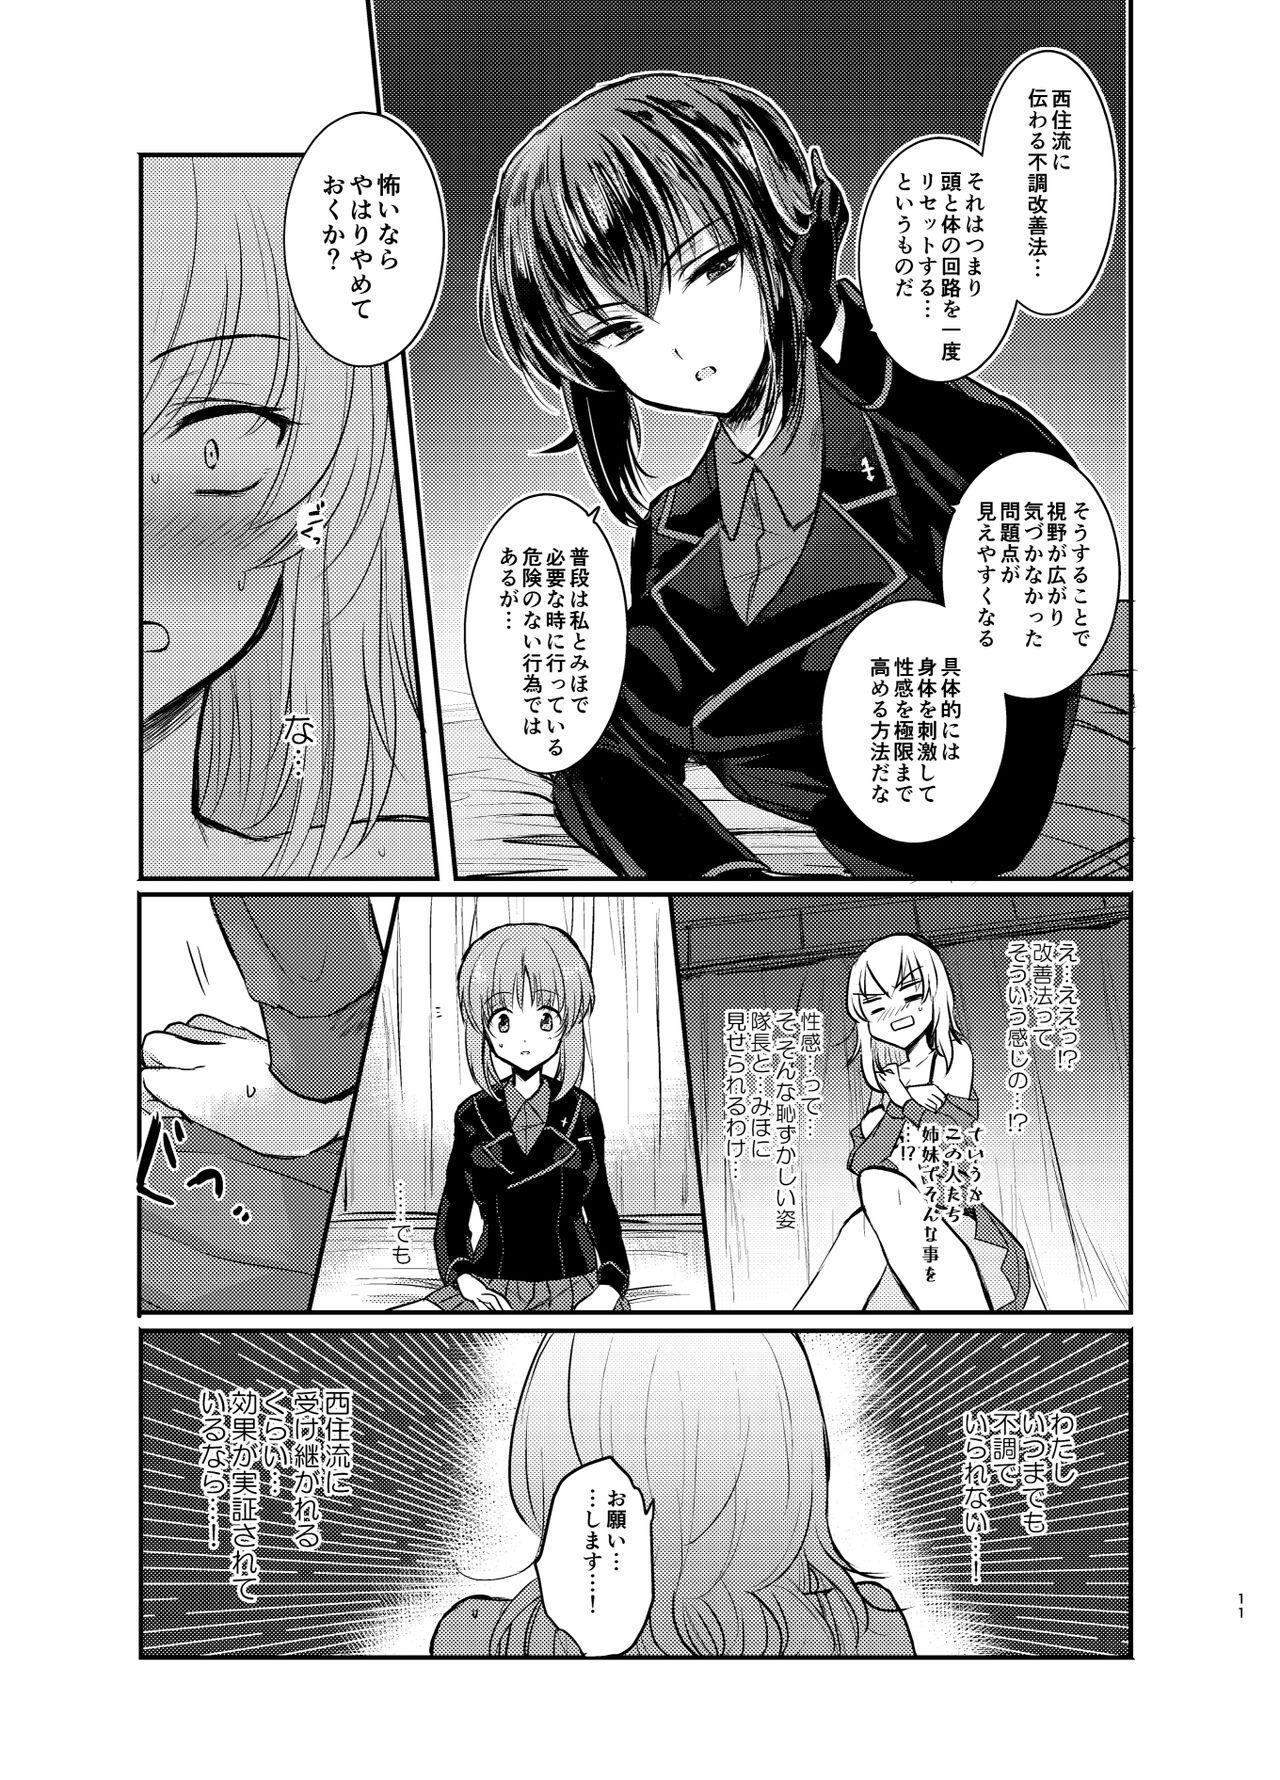 Sologirl Nishizumi Refre - Girls und panzer Stranger - Page 11